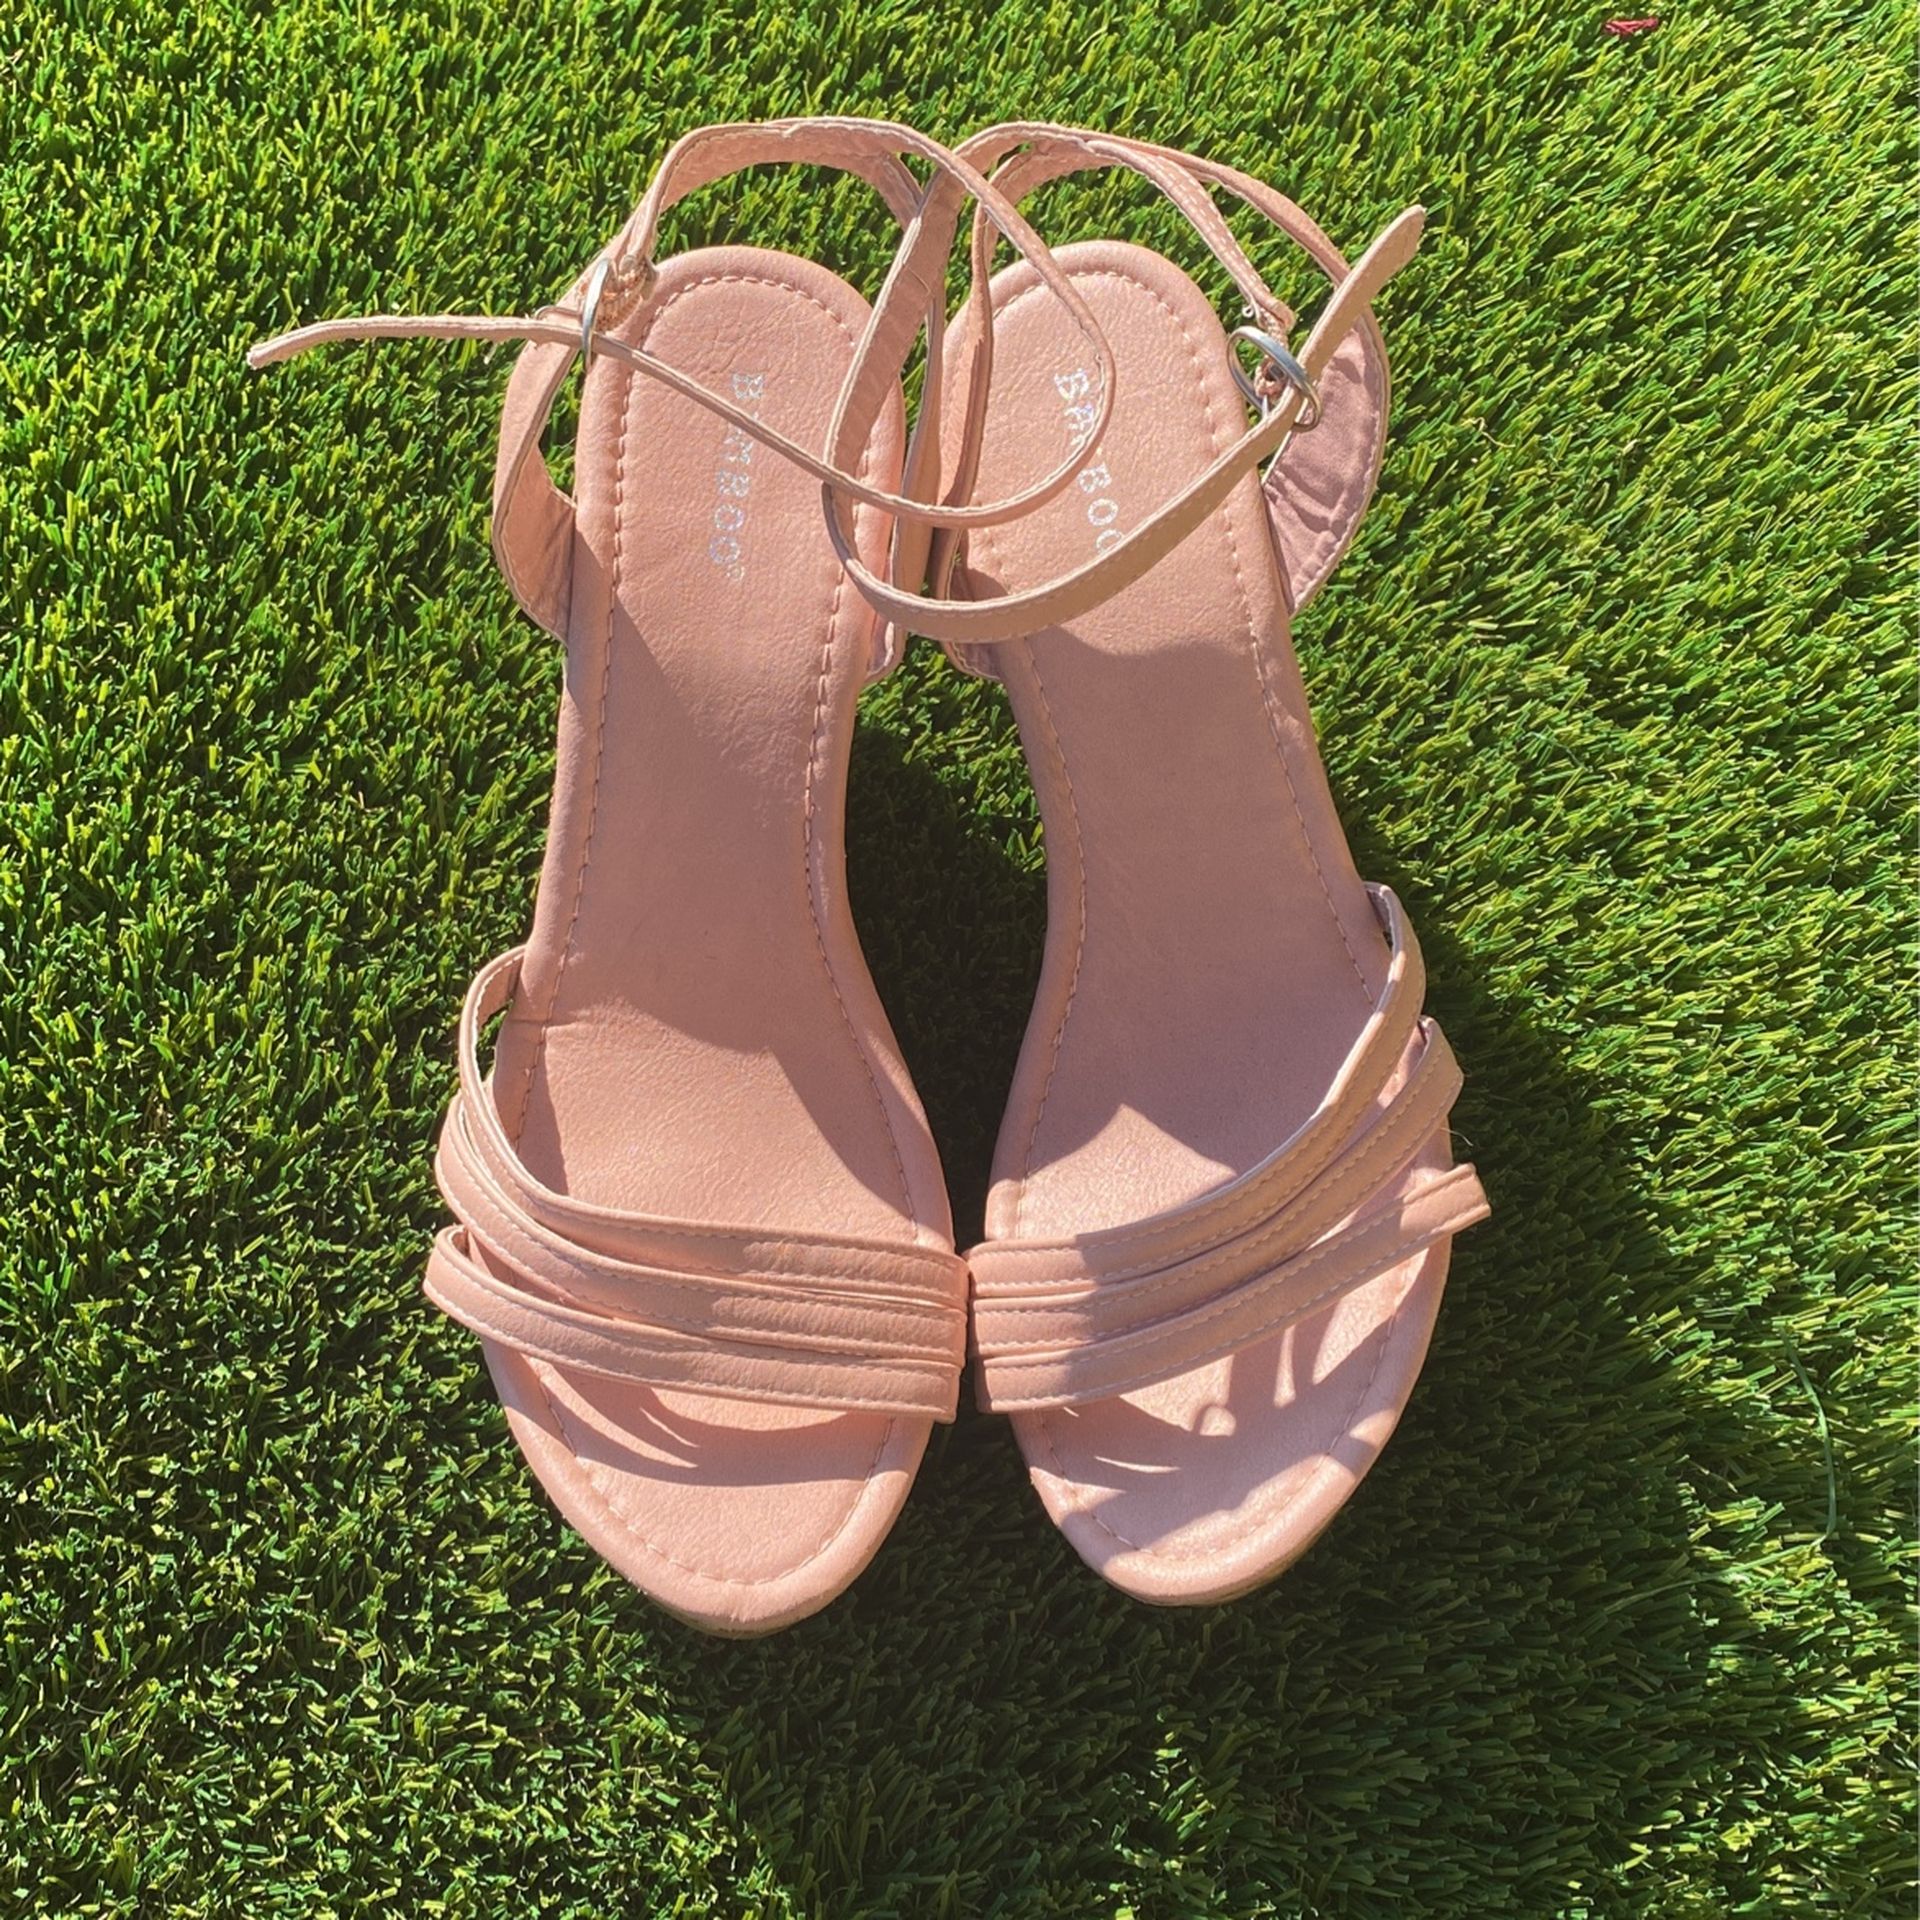 pink heels